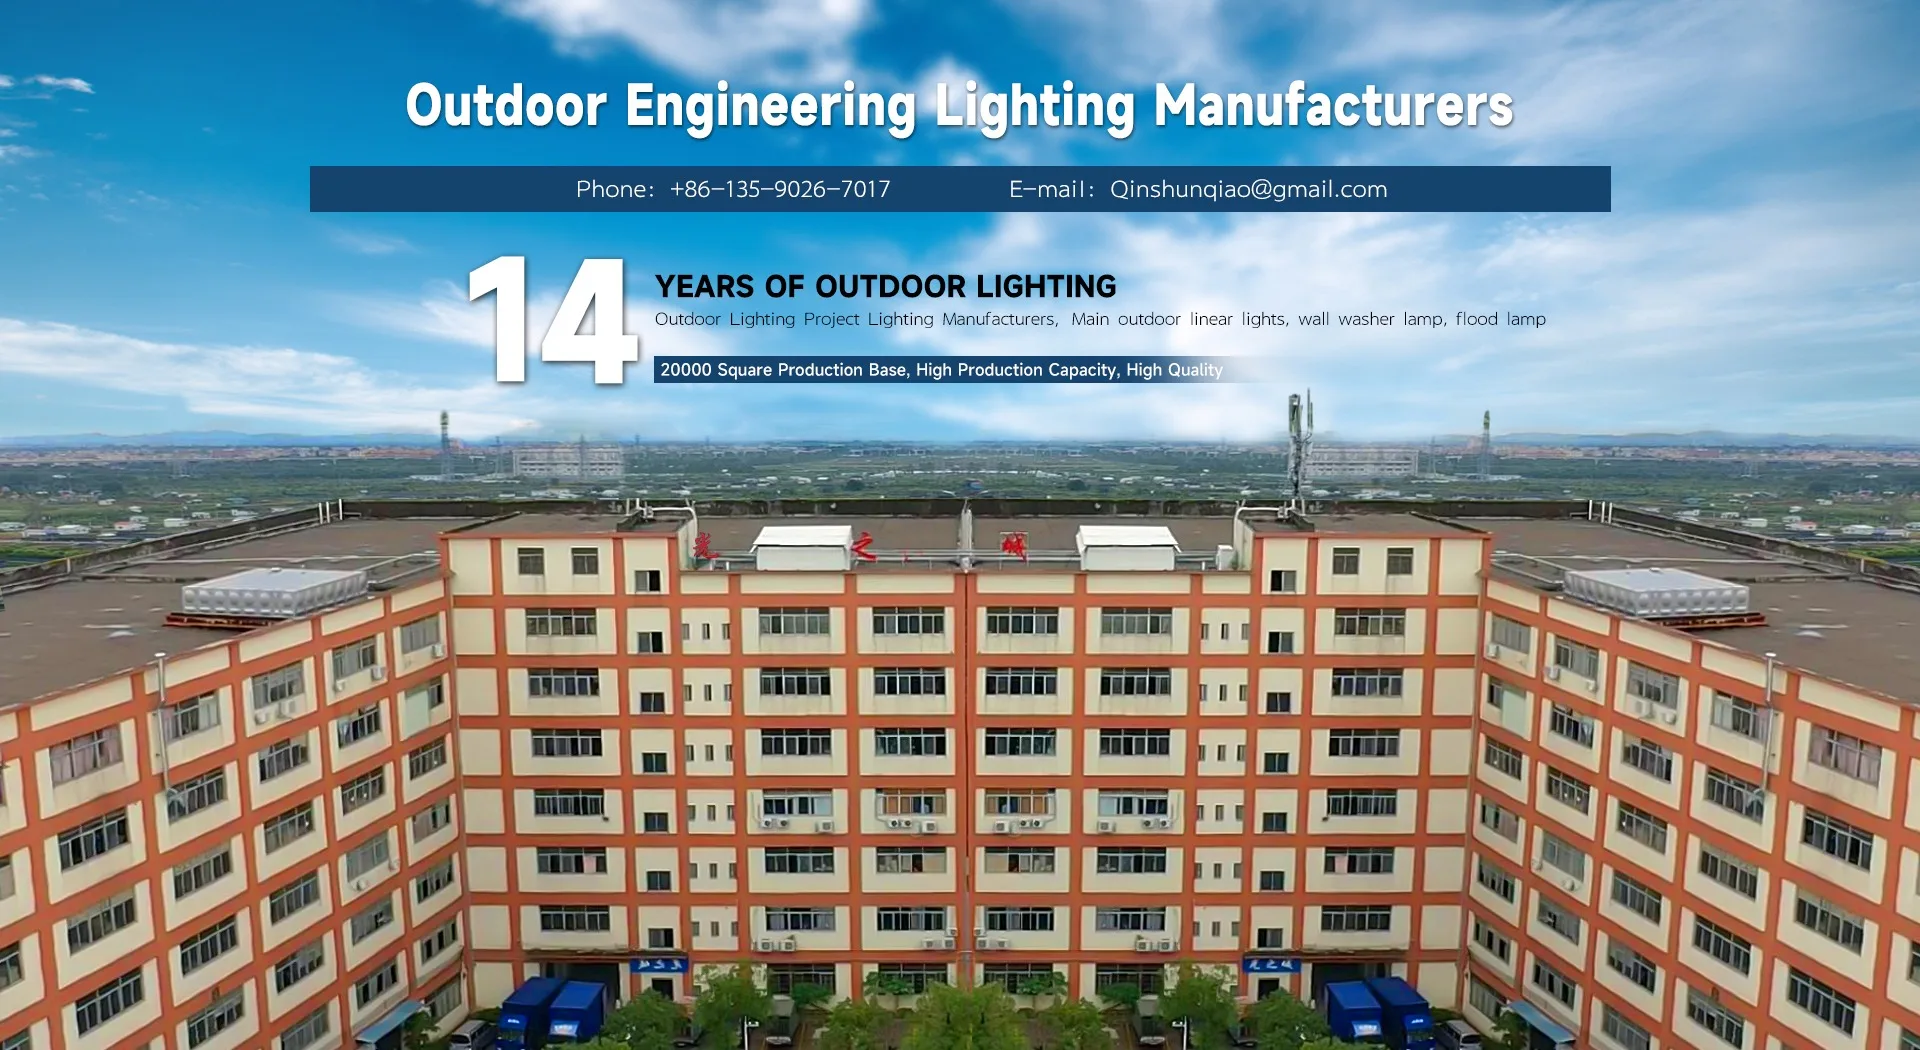 Outdoor lighting manufacturers